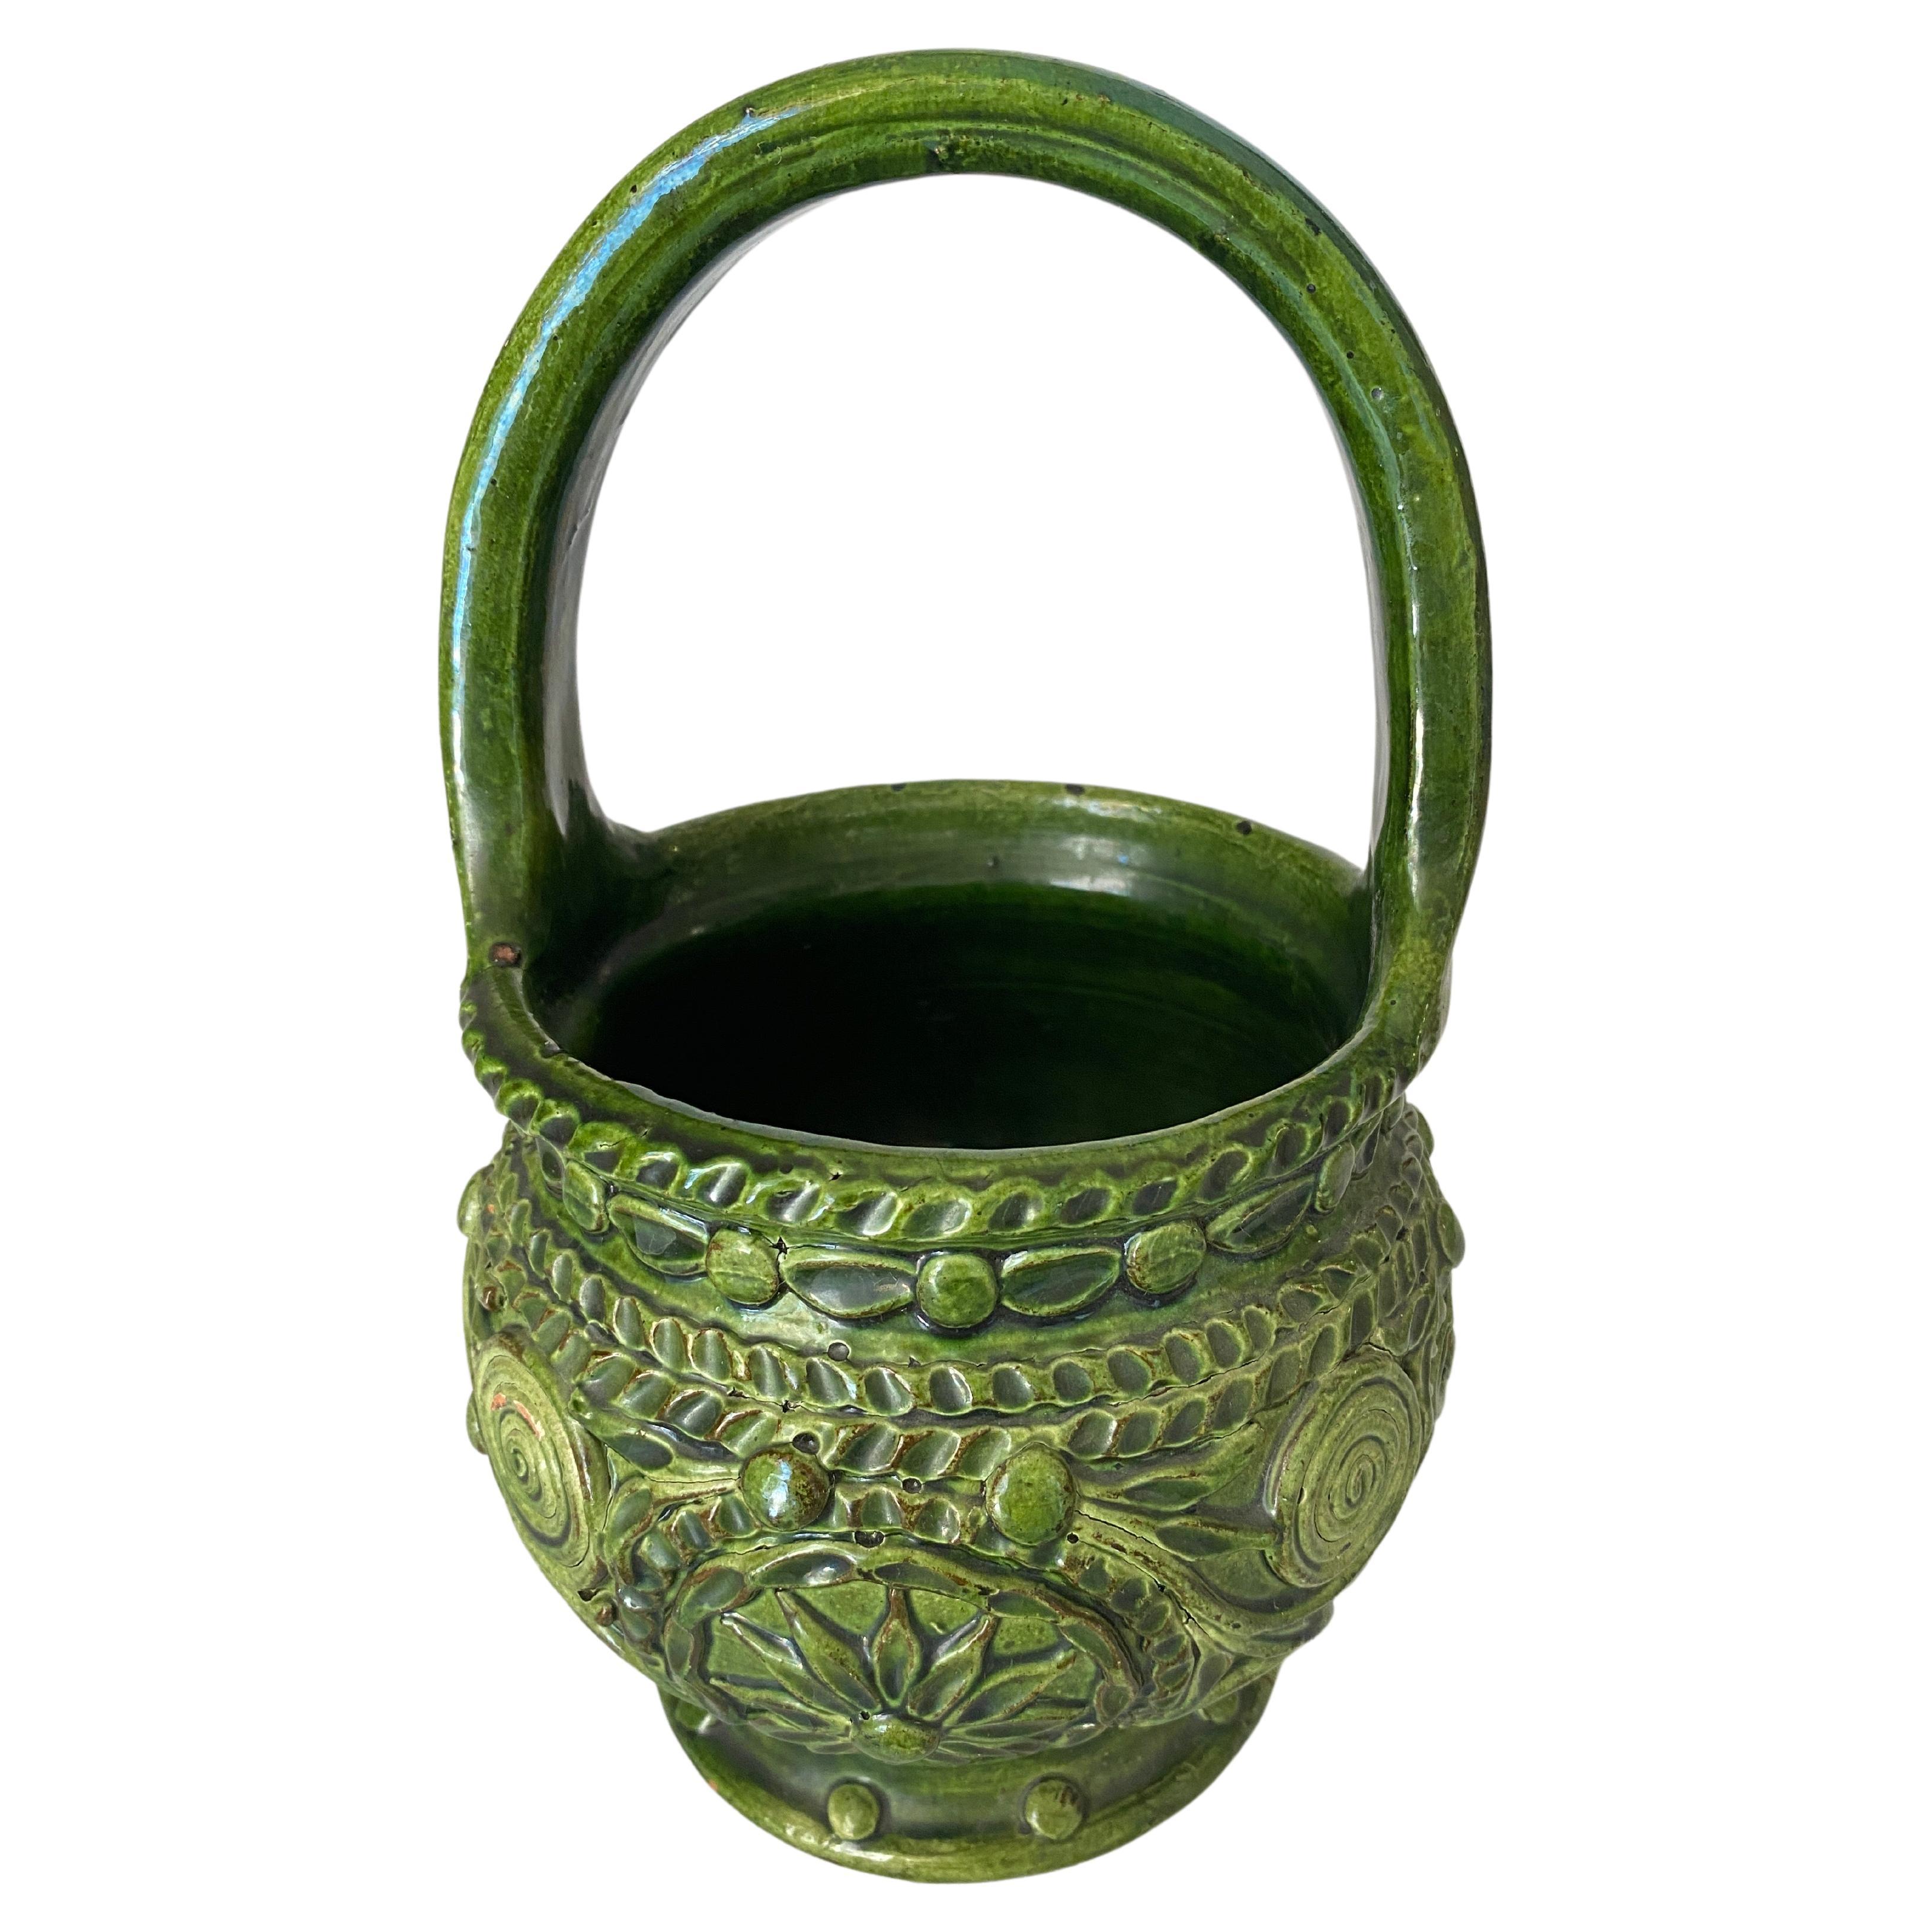  Pot ou boîte en céramique verte avec poignée circulaire Majolica France du 19ème siècle